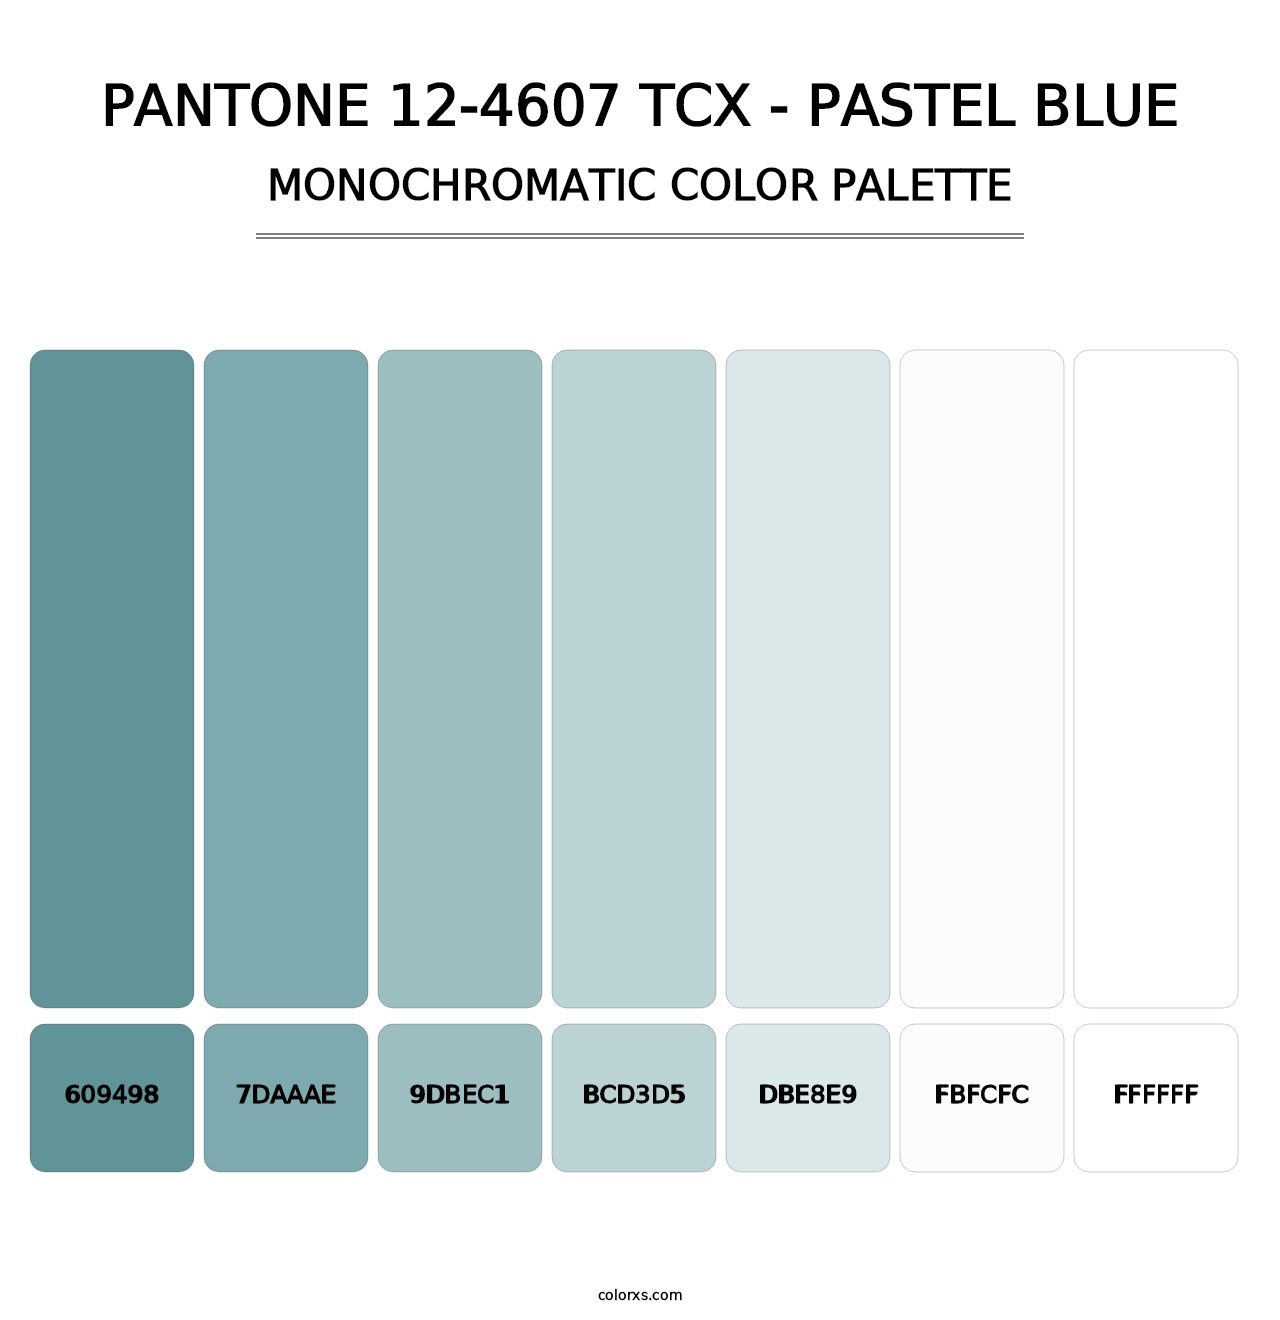 PANTONE 12-4607 TCX - Pastel Blue - Monochromatic Color Palette